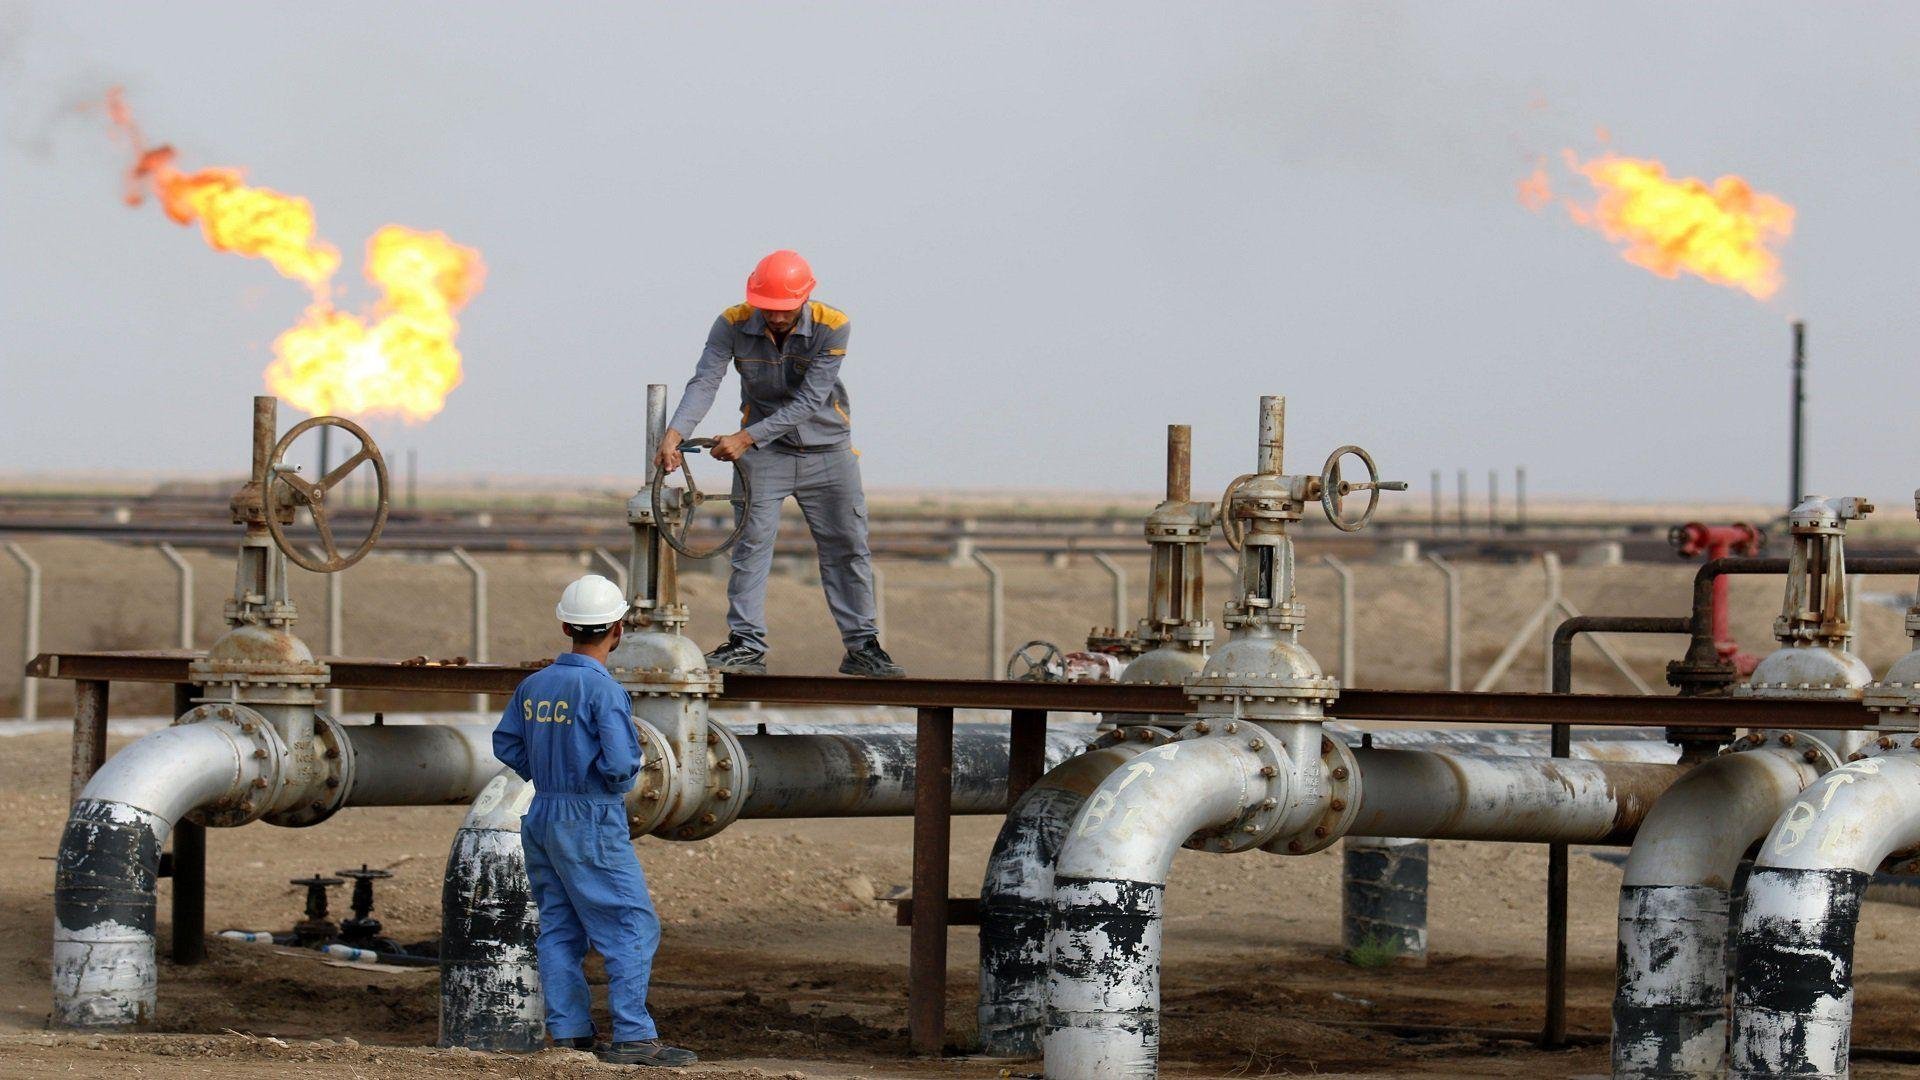 بـ 555 الف برميل يومياً ارتفاع كبير بصادرات العراق النفطية الى امريكا